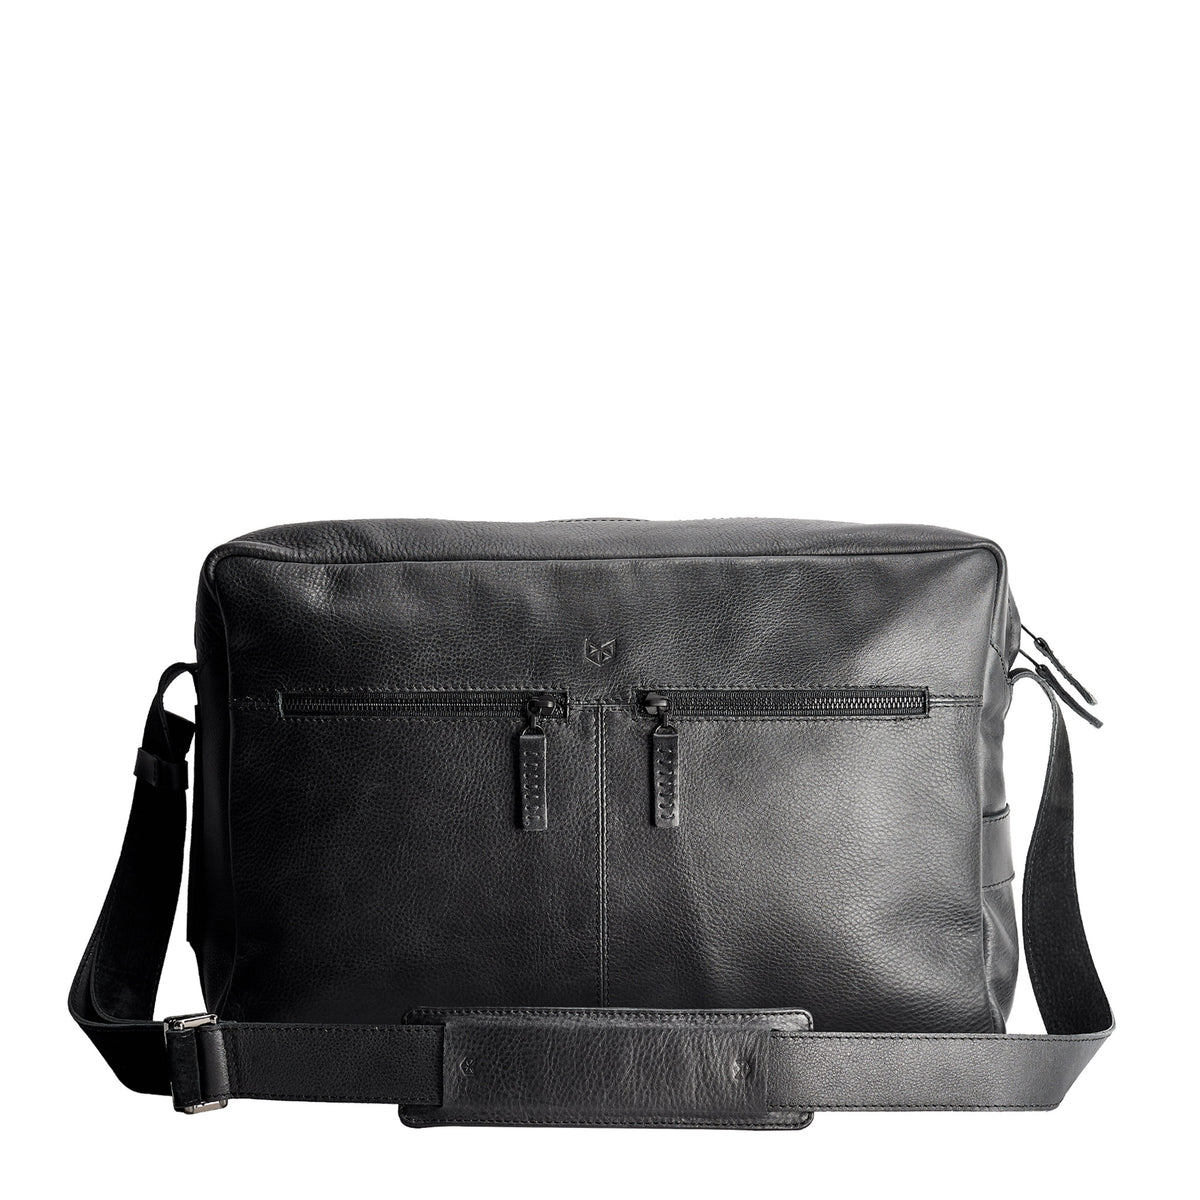 Front black handmade leather messenger bag for men. Commuter bag, laptop leather bag by Capra Leather.